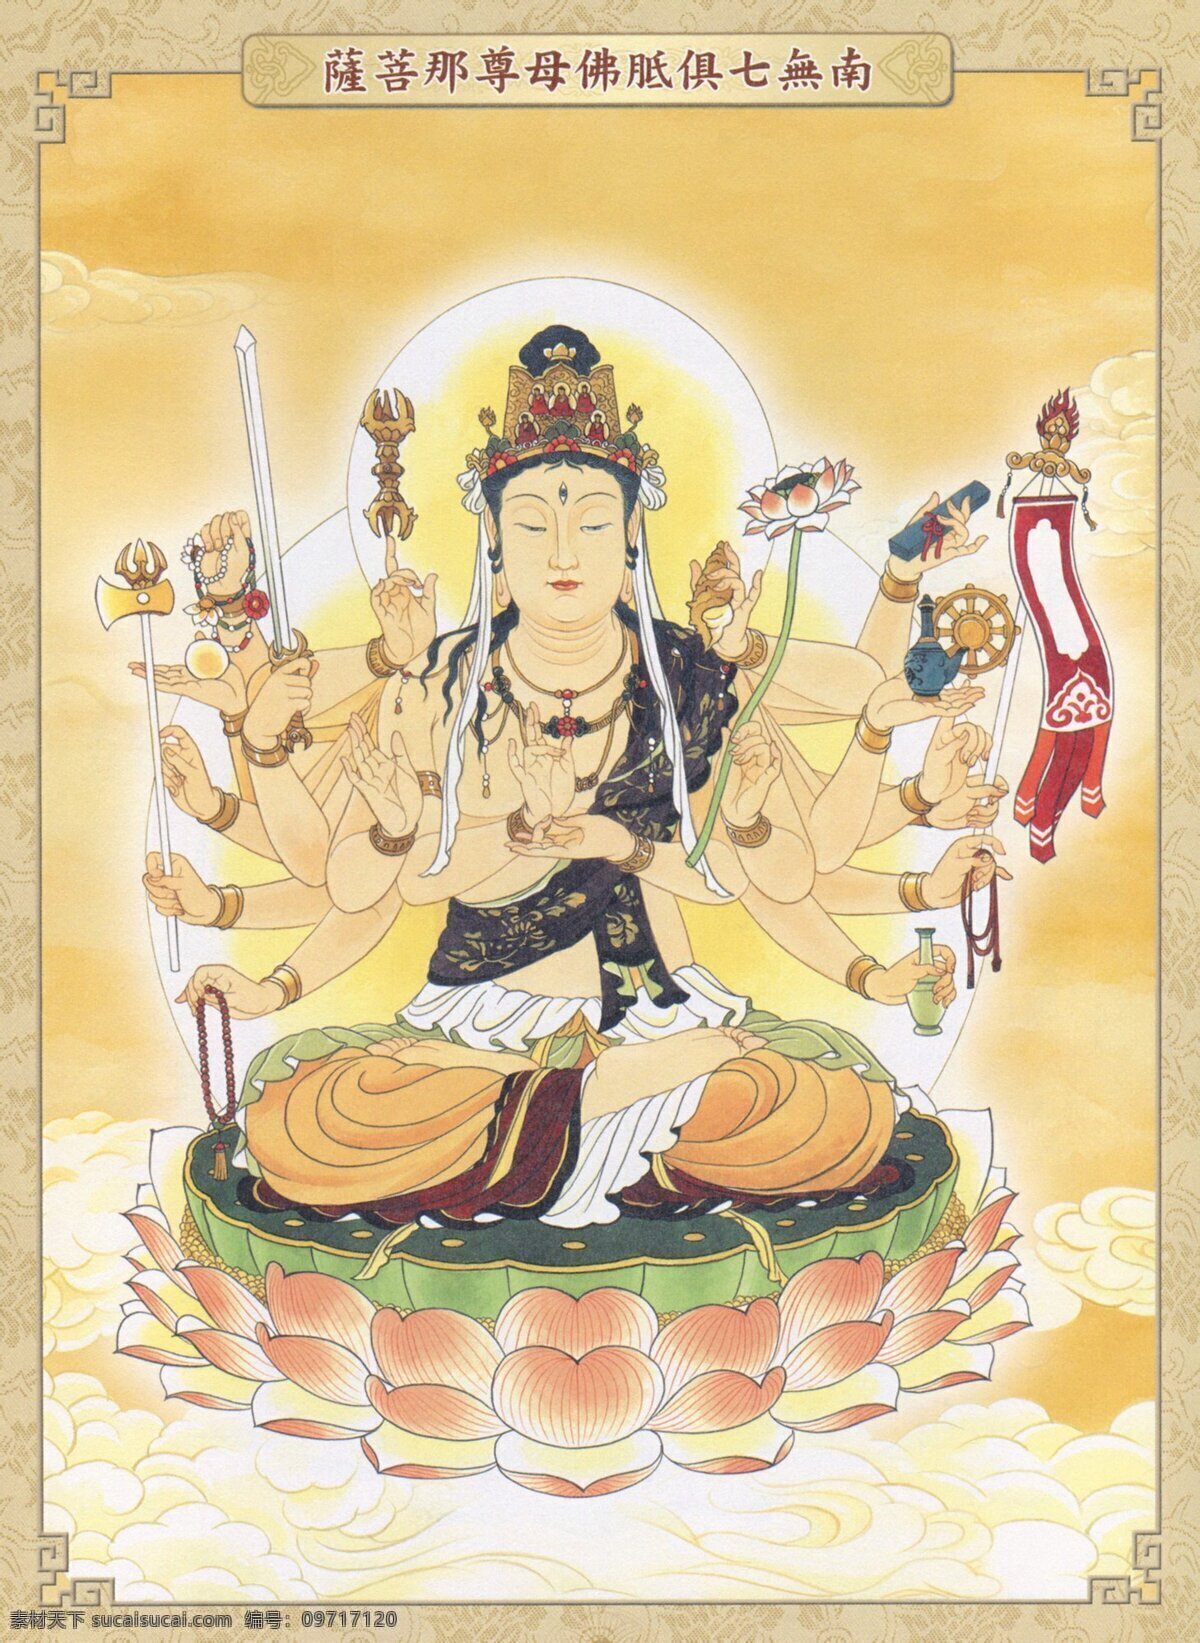 七 俱 胝 佛 母 尊 菩萨 准提菩萨 准提观音 准提 佛教 宗教艺术 汉传佛教 文化艺术 宗教信仰